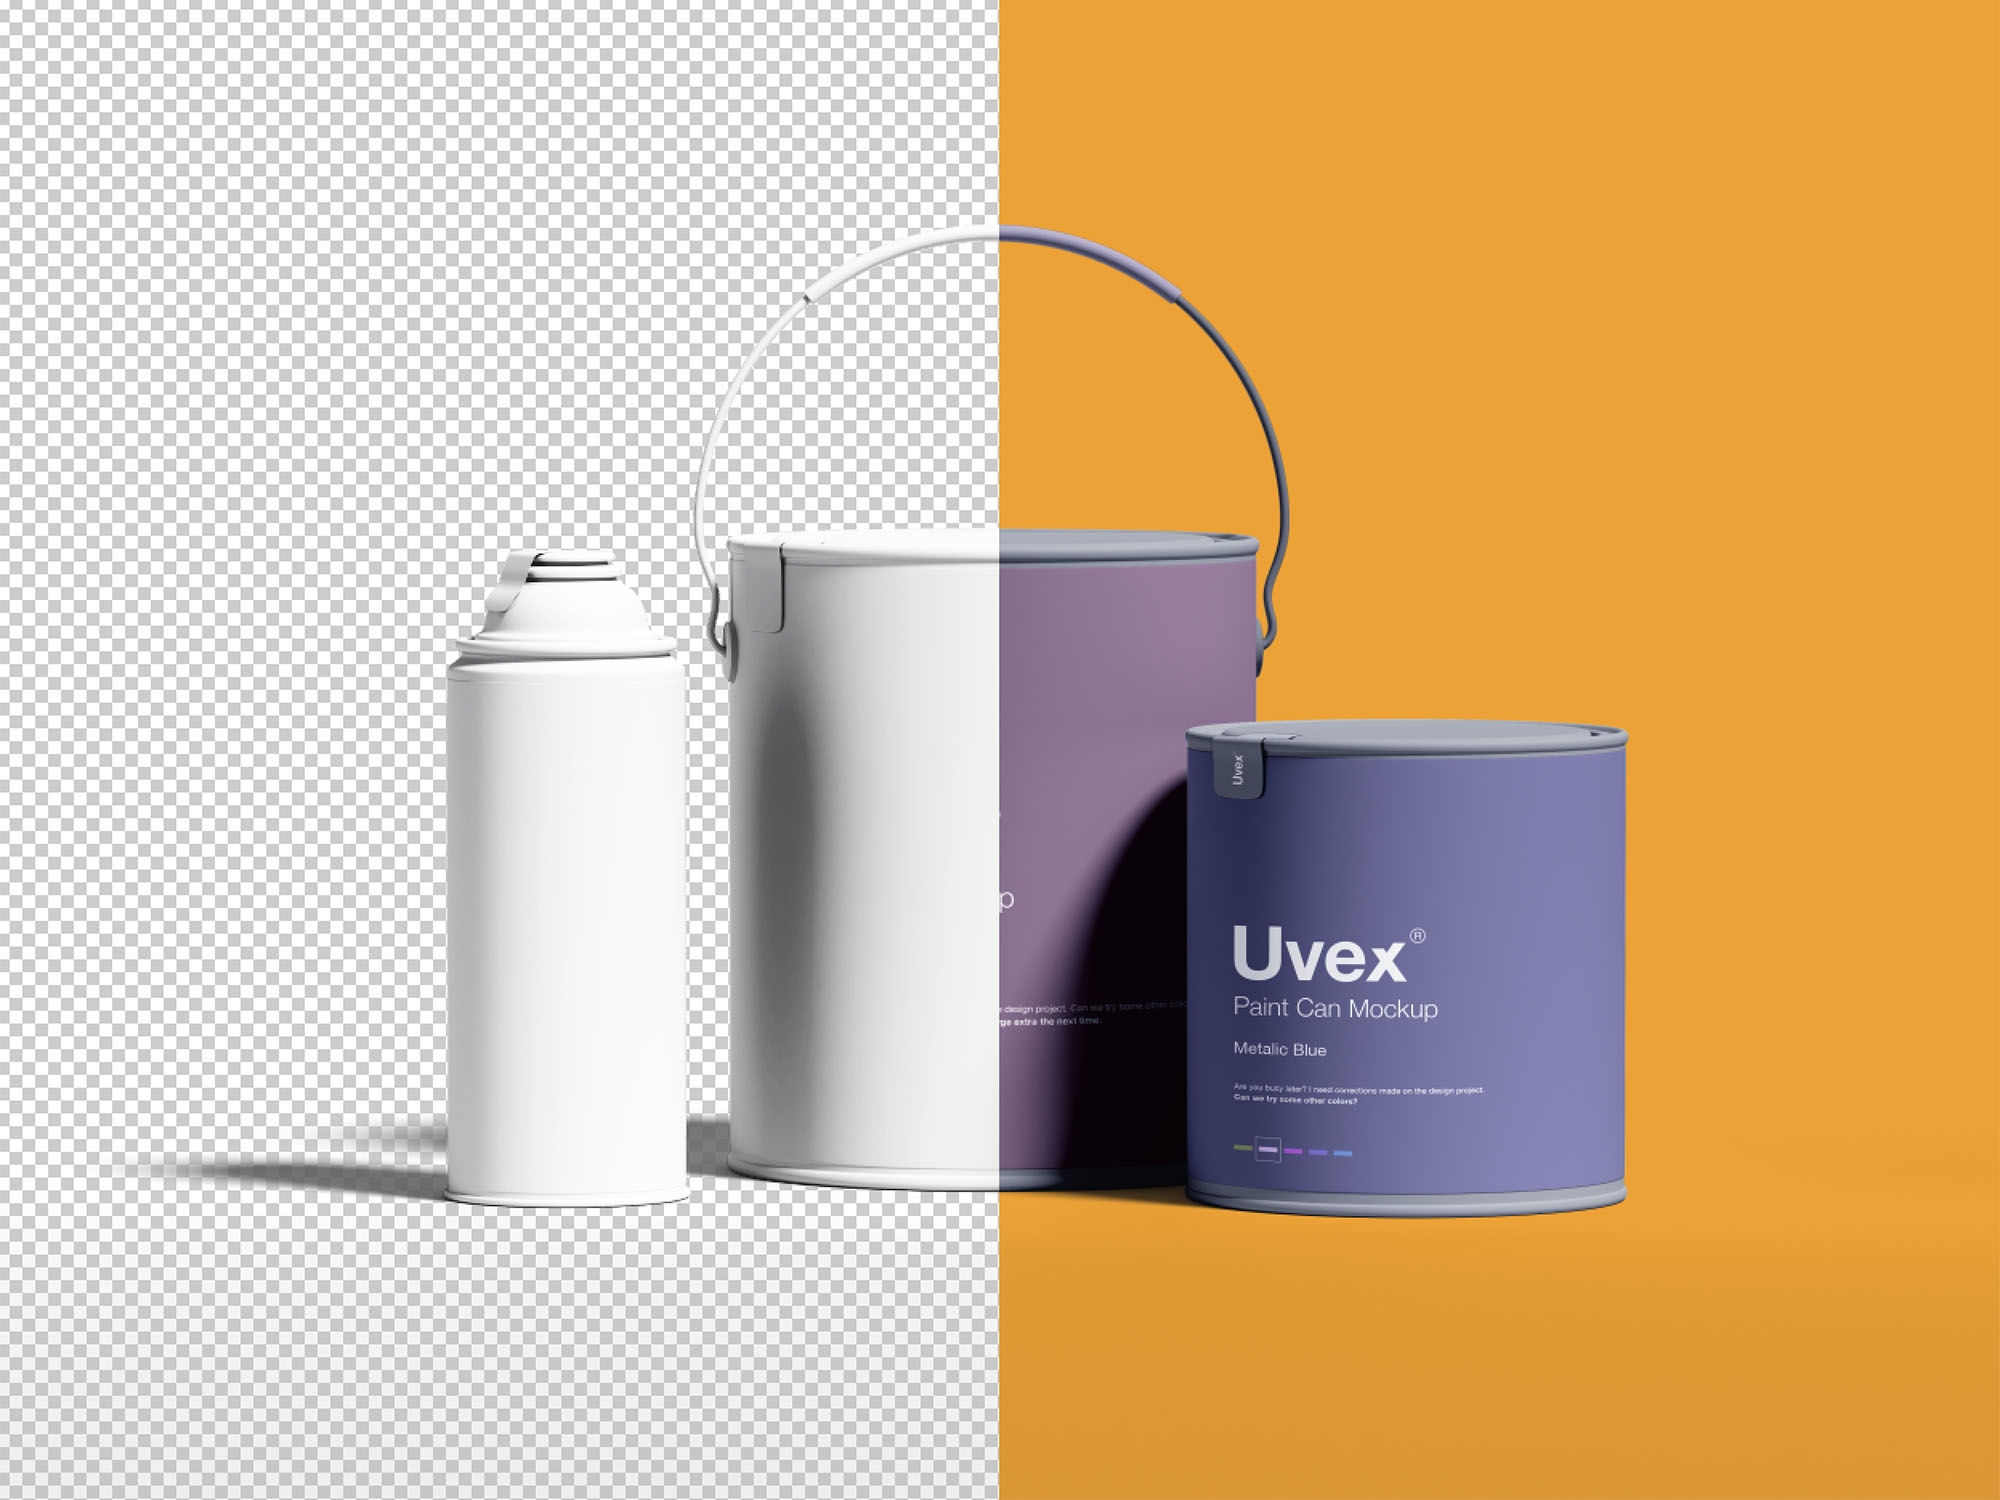 油漆桶/油漆容器包装设计效果图样机 Paint Packaging Mockup插图(4)